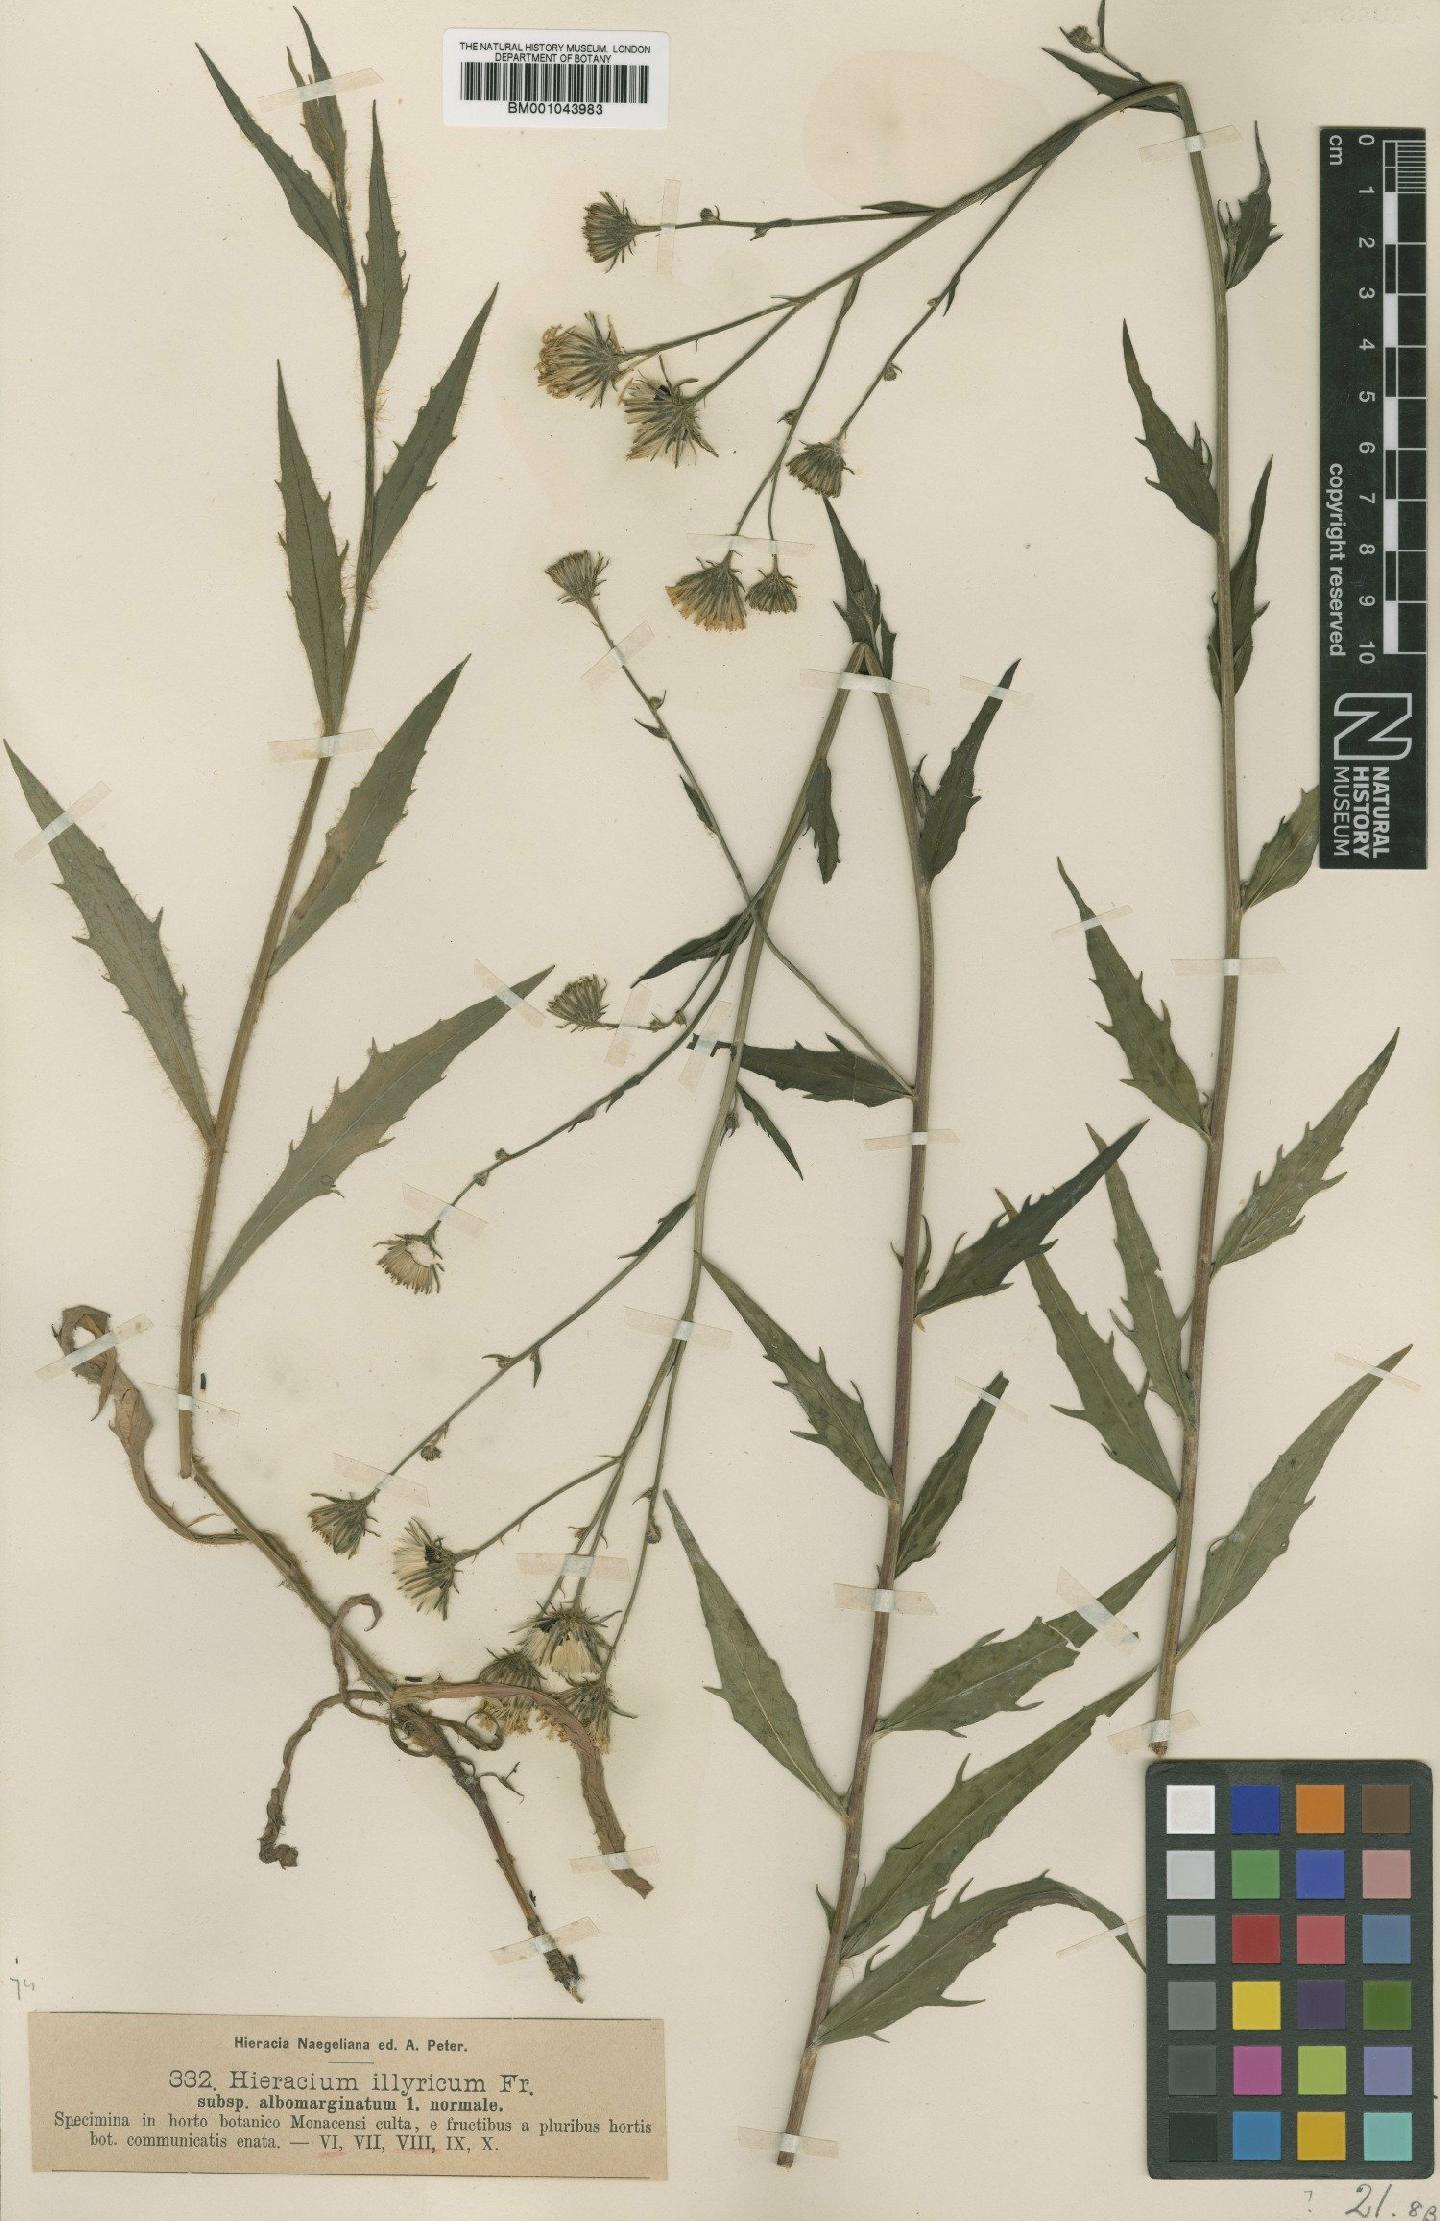 To NHMUK collection (Hieracium illyricum subsp. calcareum (Hornem.) Nägeli & Peter; TYPE; NHMUK:ecatalogue:2395313)